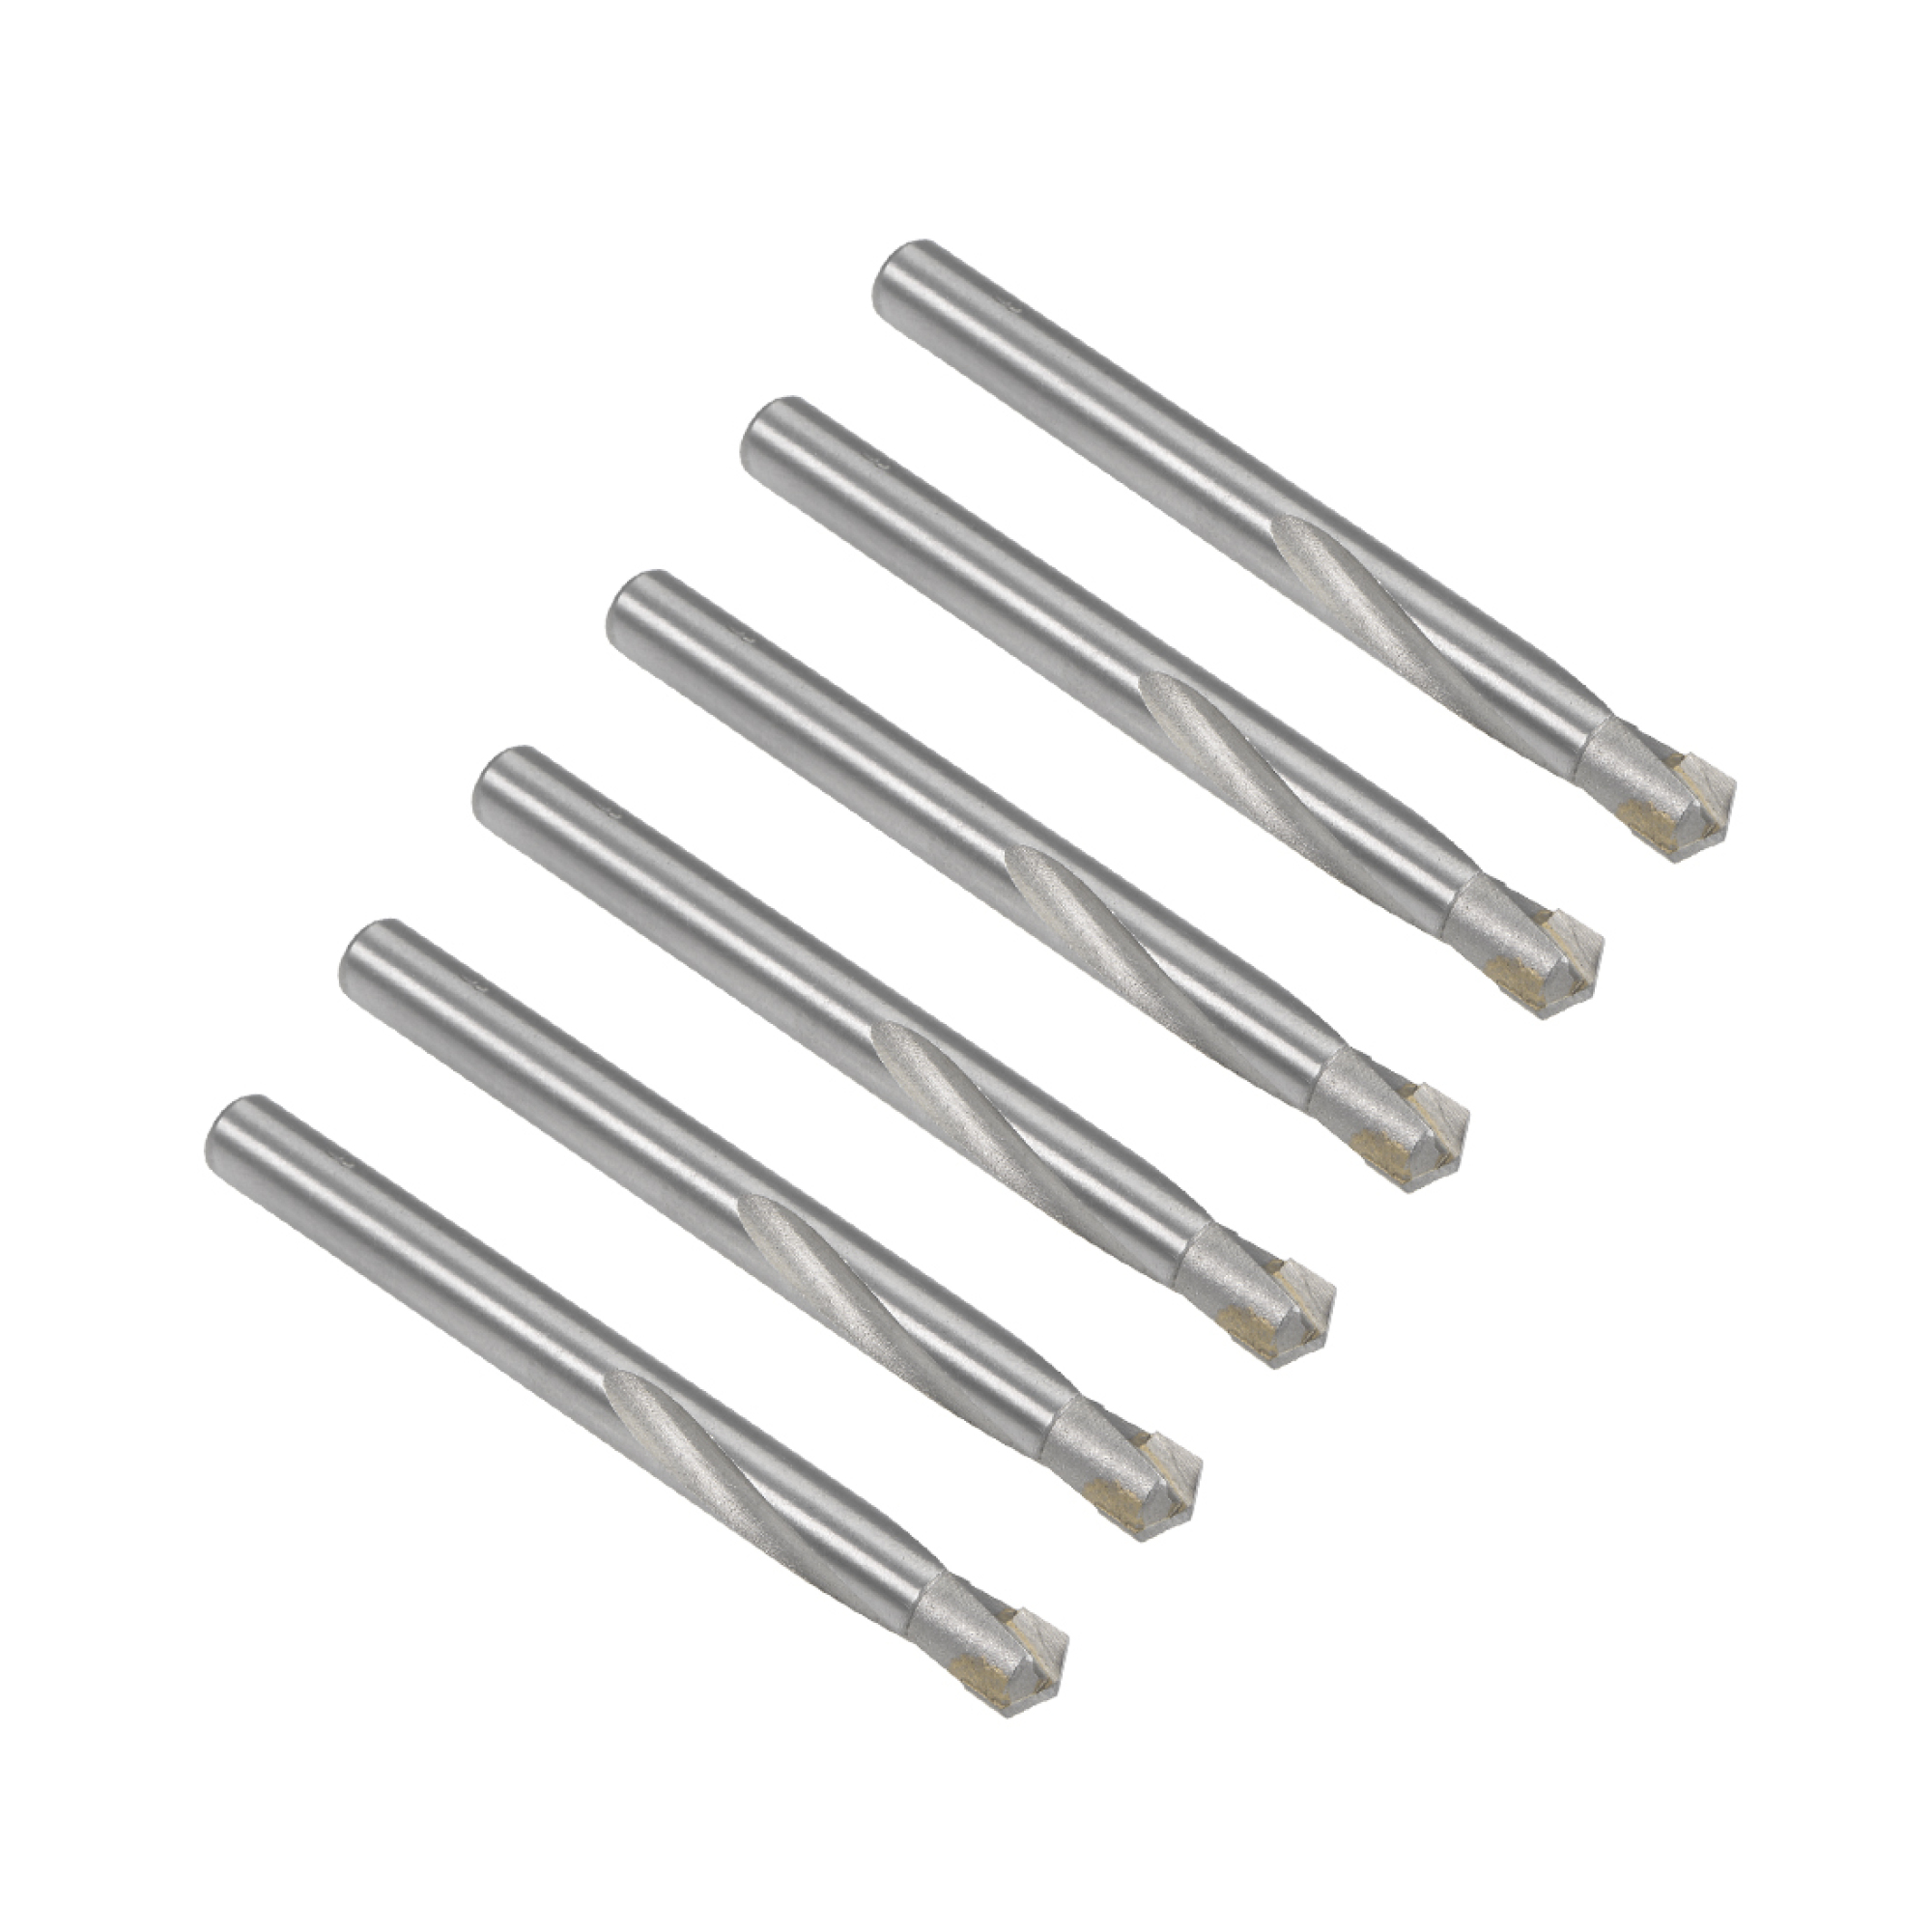 6pcs Carbide Drill Bits for Metals 9mm